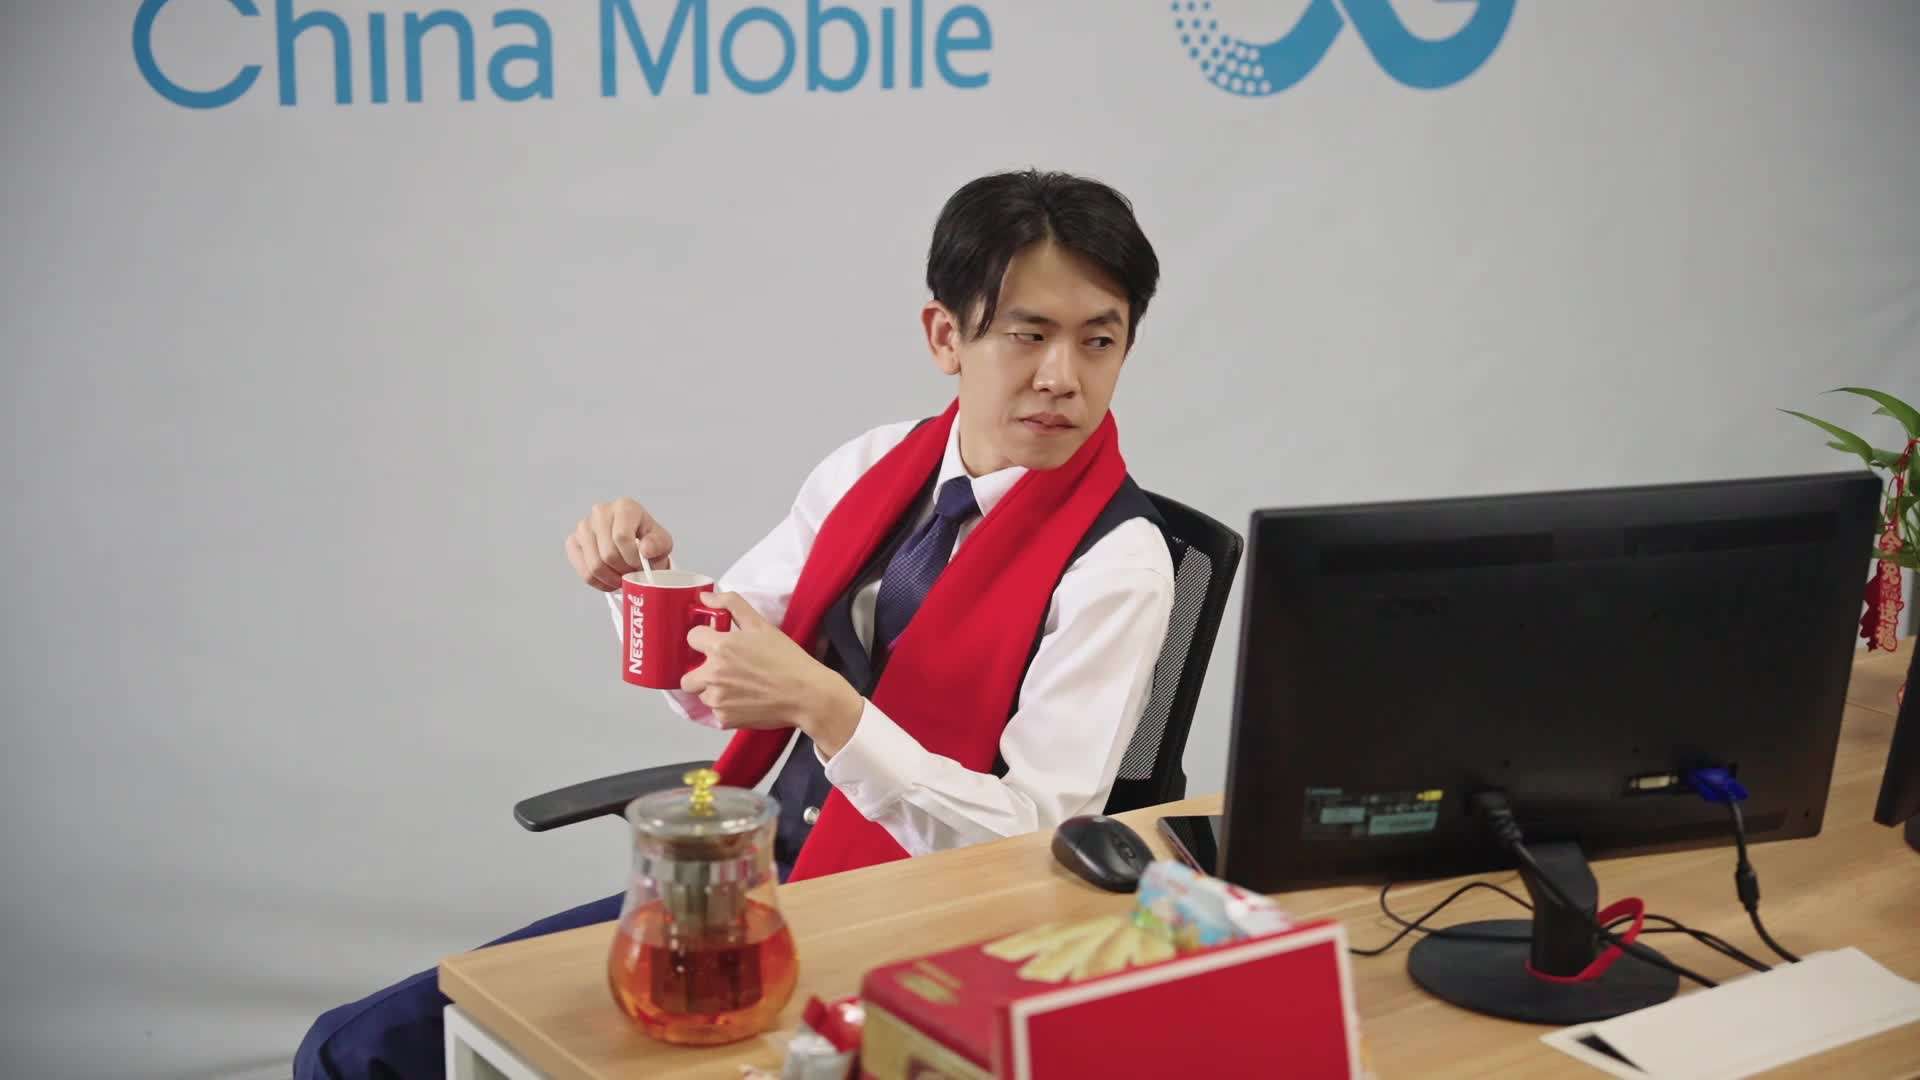 新年之企业微信客服 中国移动创意宣传视频